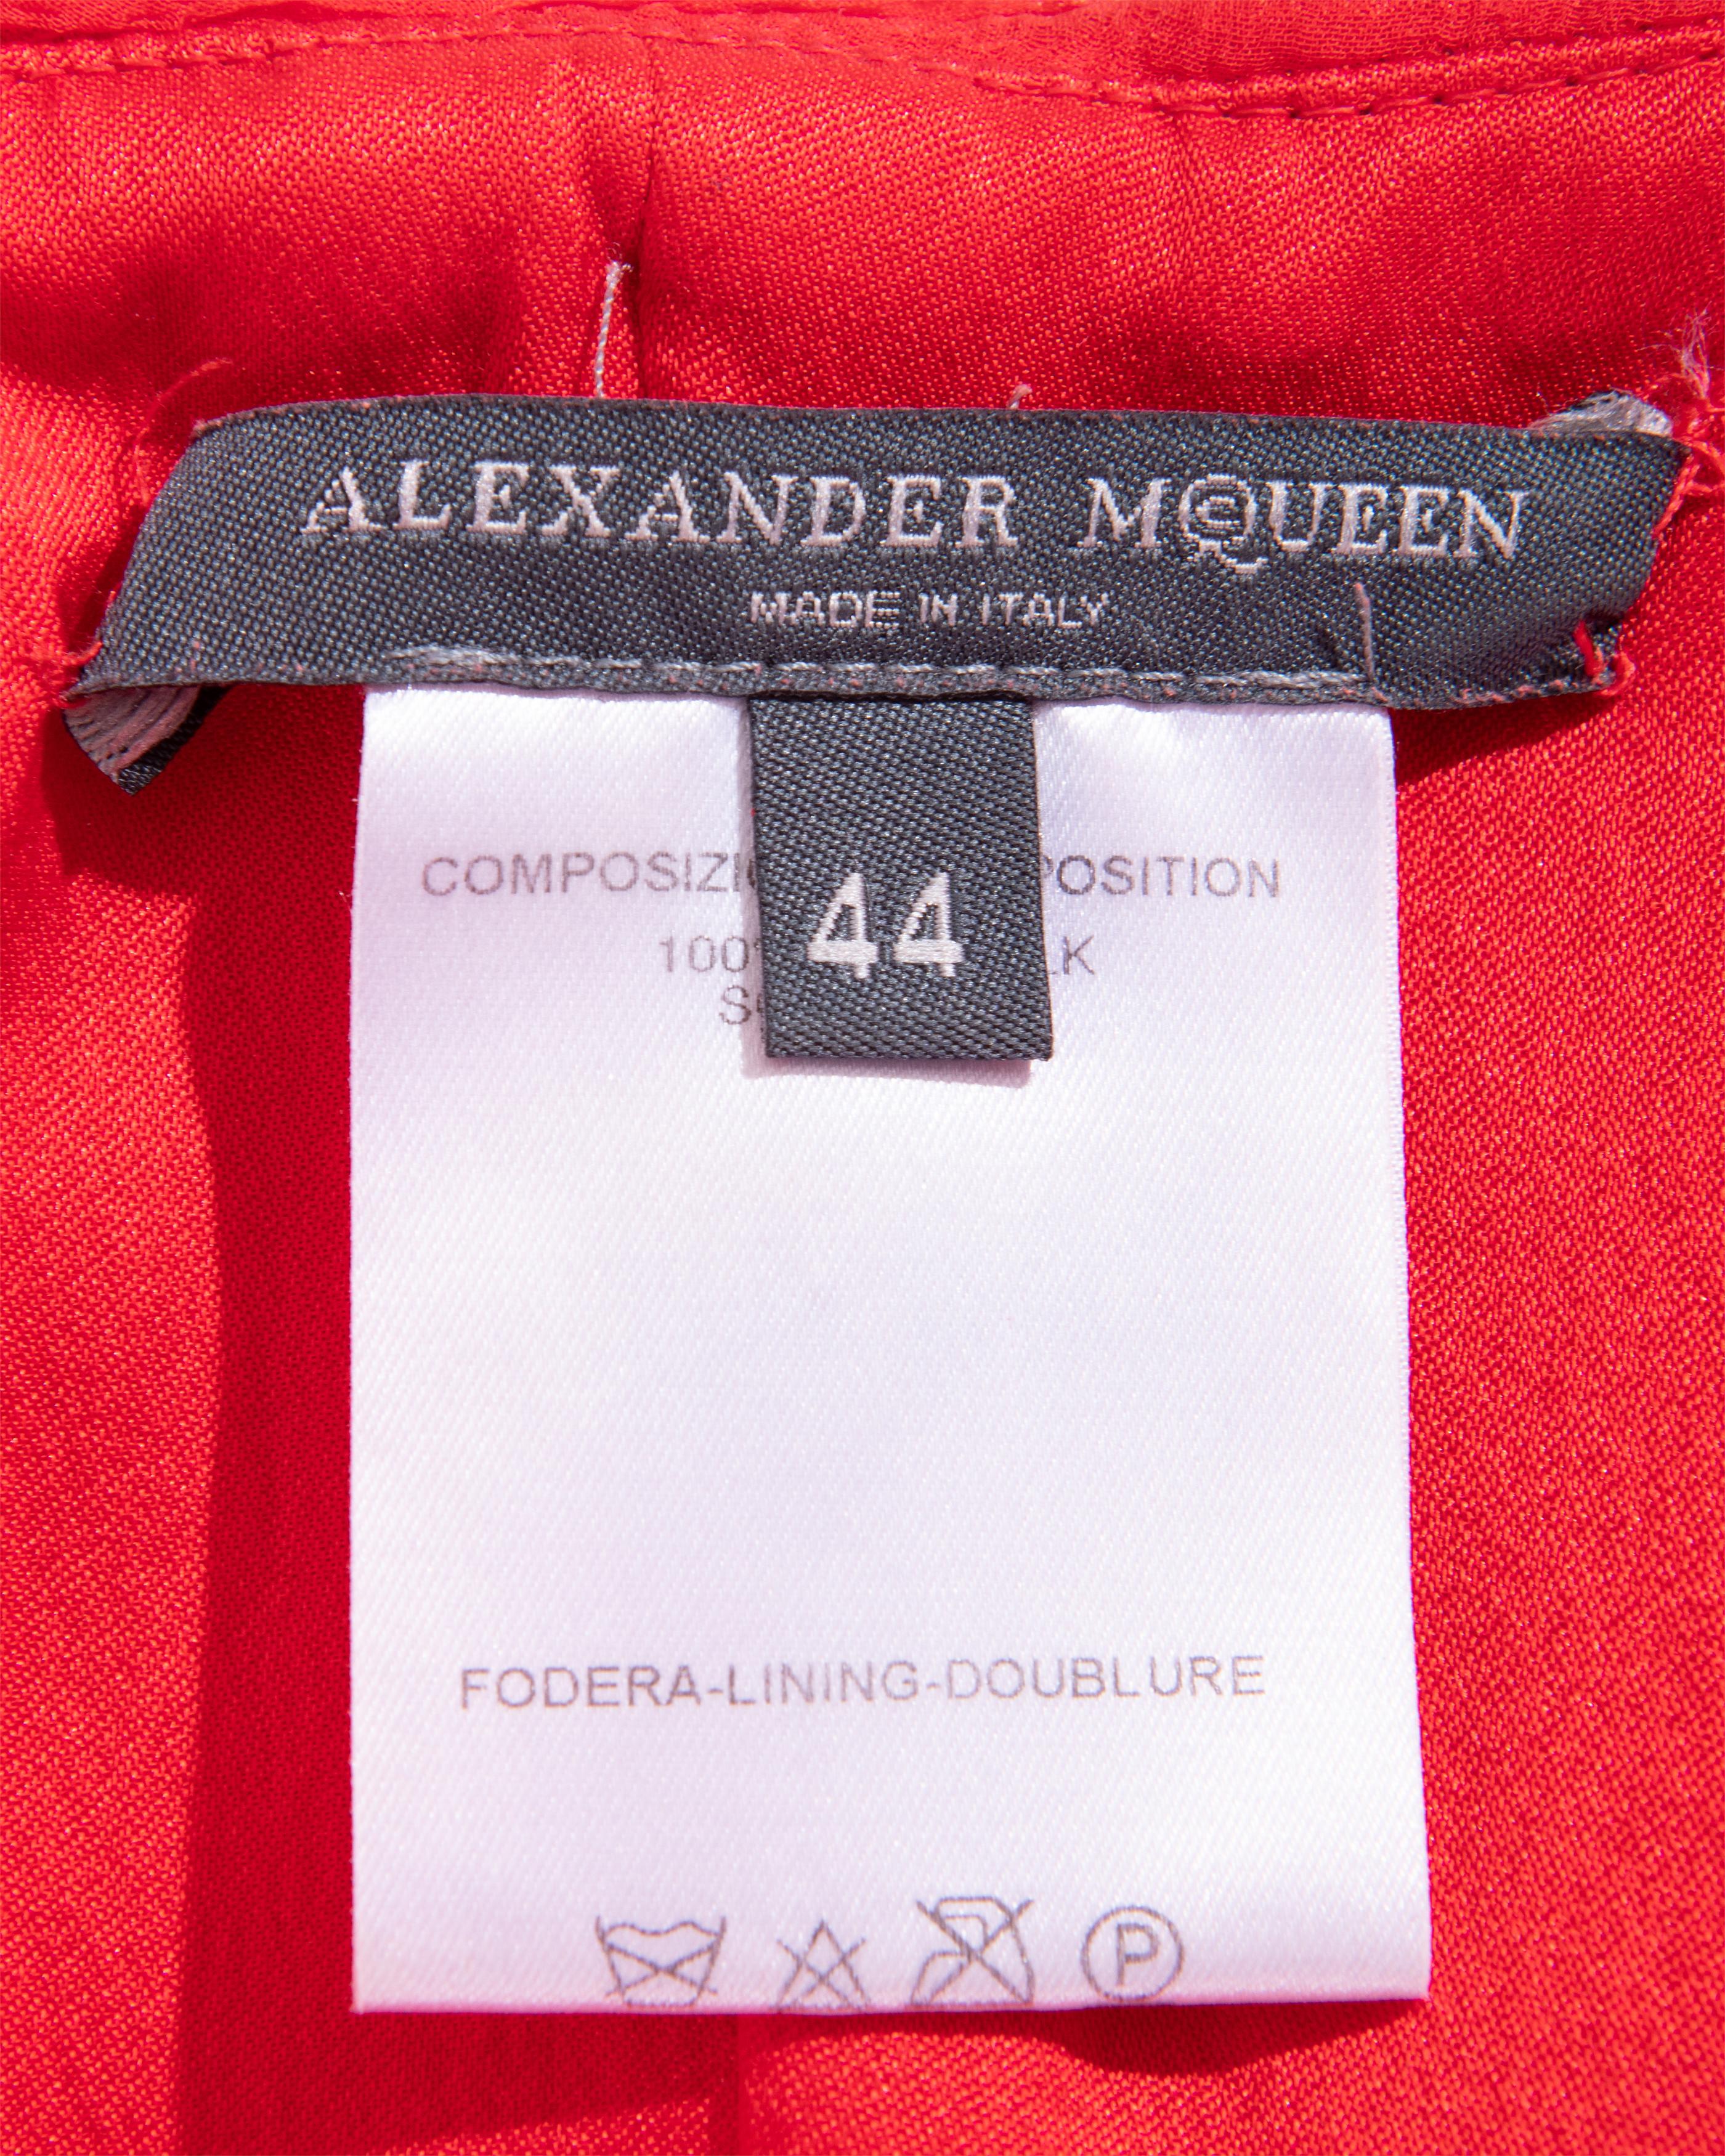 Alexander McQueen, F/S 2003  Kollektion 'Irere' Rotes Seidenchiffonkleid mit Schärpe 15